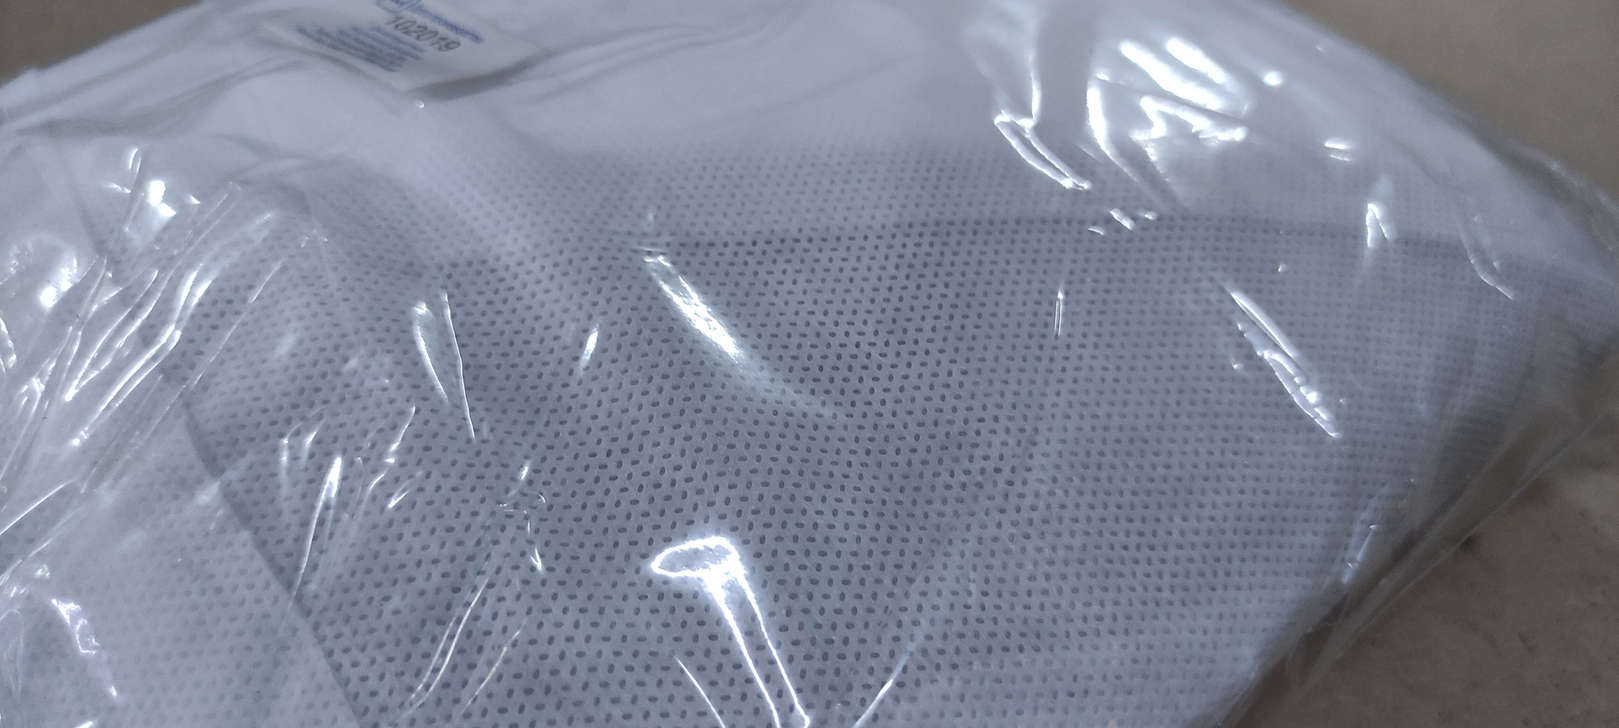 Защитный одноразовый комбинезон с капюшоном малярный Kleenguard A25+ ЗМ белый размер ХХХL